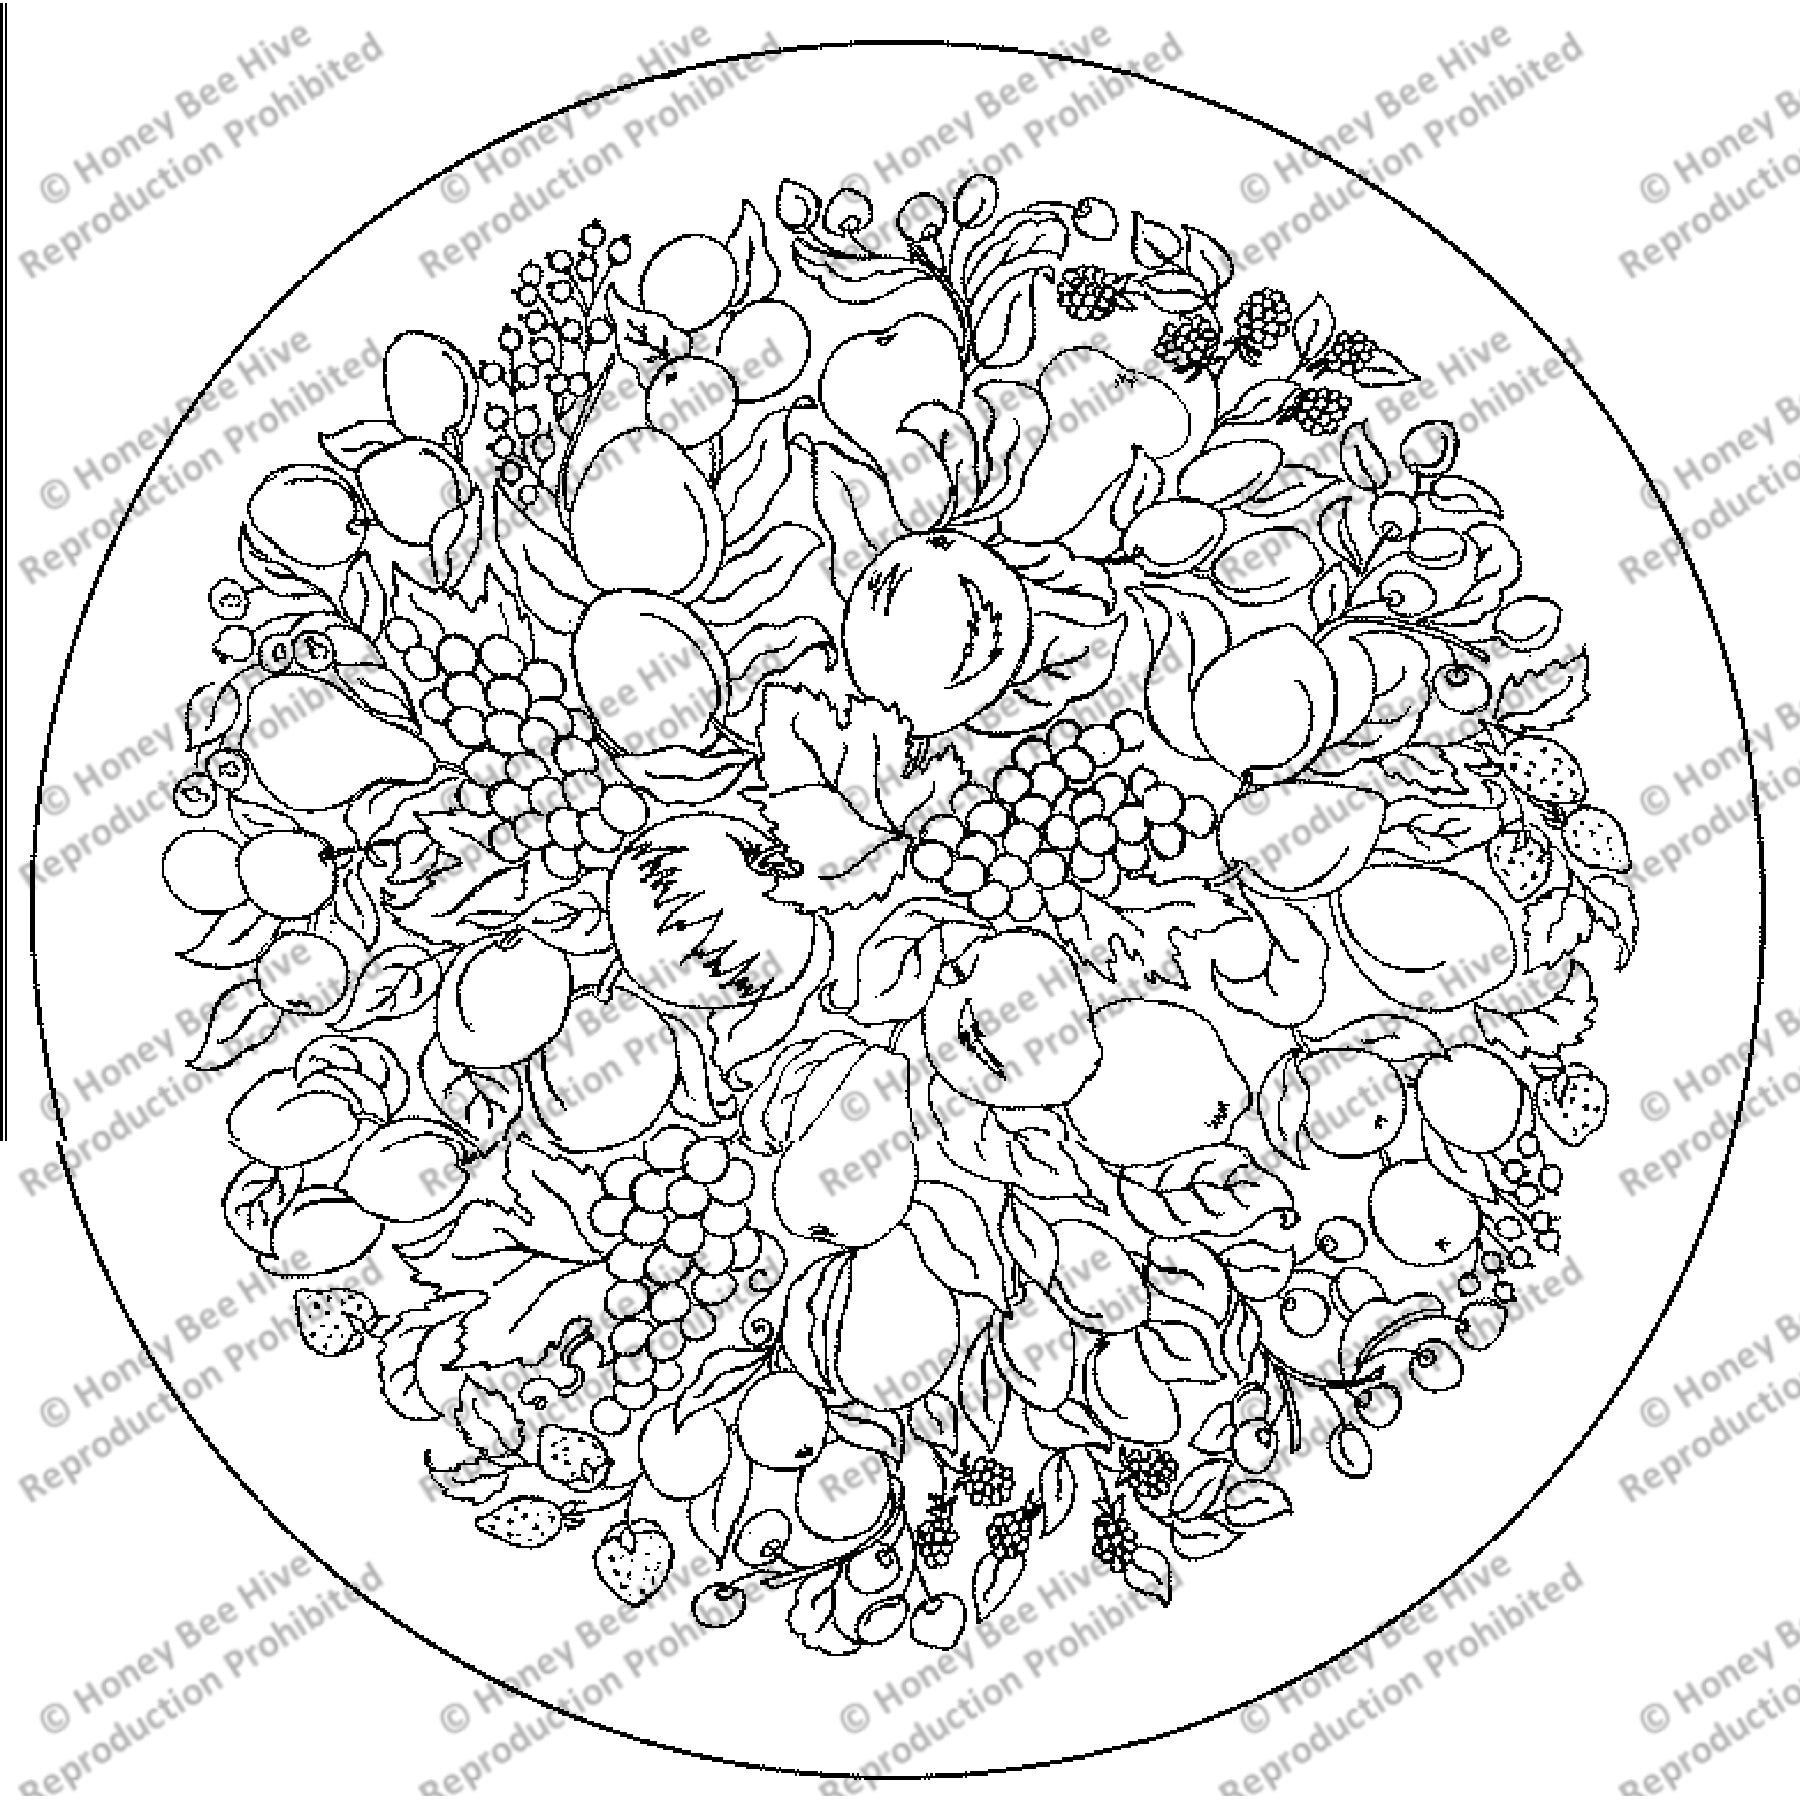 Fruit Circle, rug hooking pattern